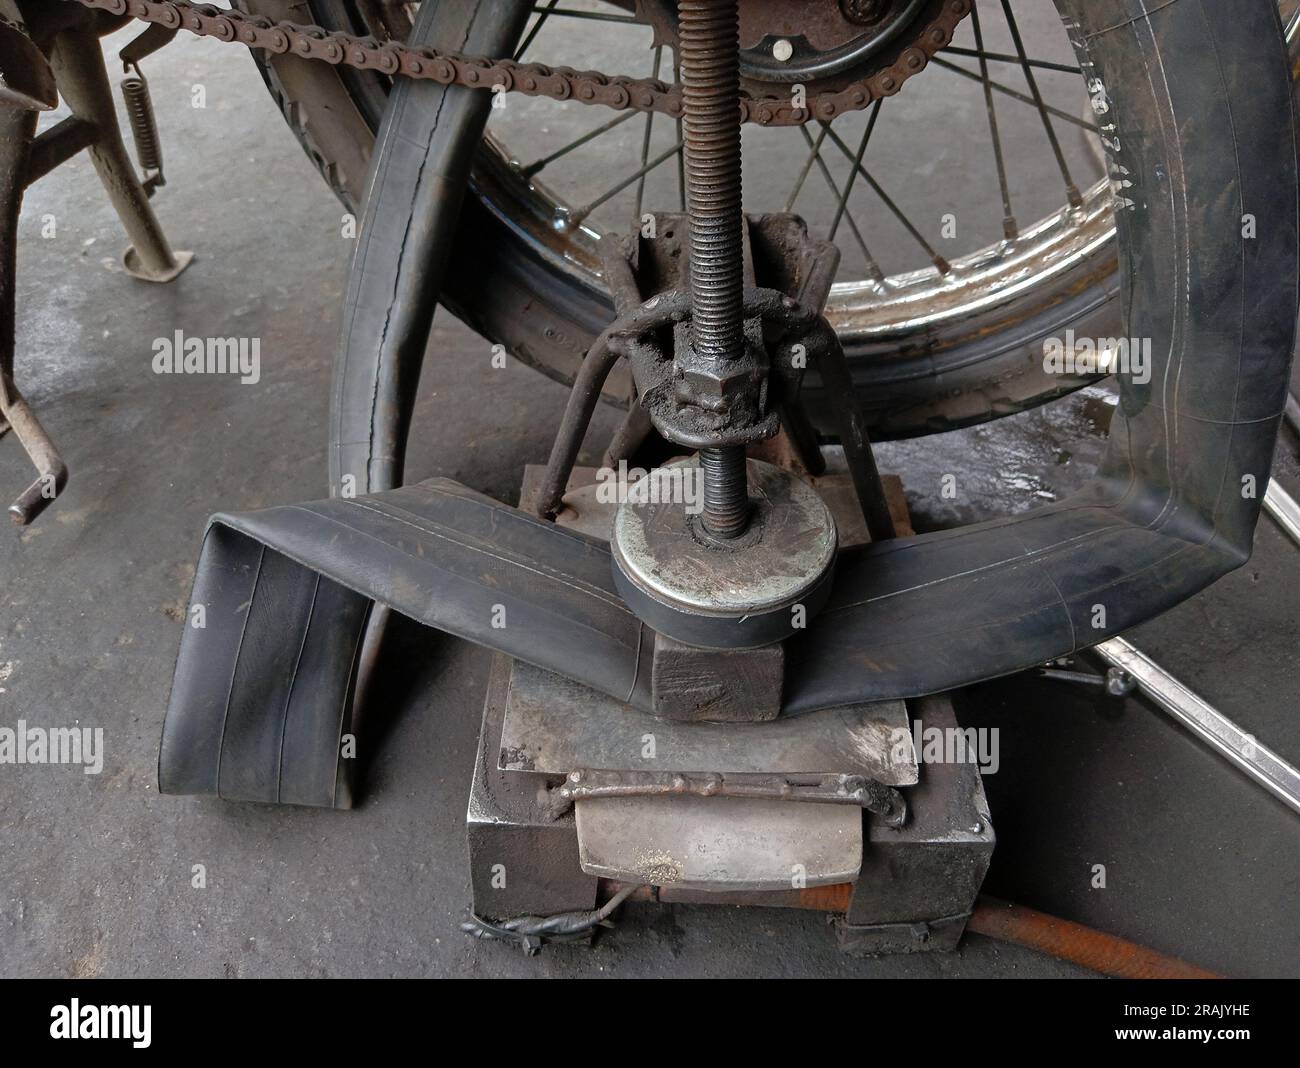 Ein Motorrad, dessen Hinterreifen in einer Reparaturwerkstatt durchstochen und mit herkömmlicher Ausrüstung zum Ausbessern von Reifen aufgebessert wird. Stockfoto